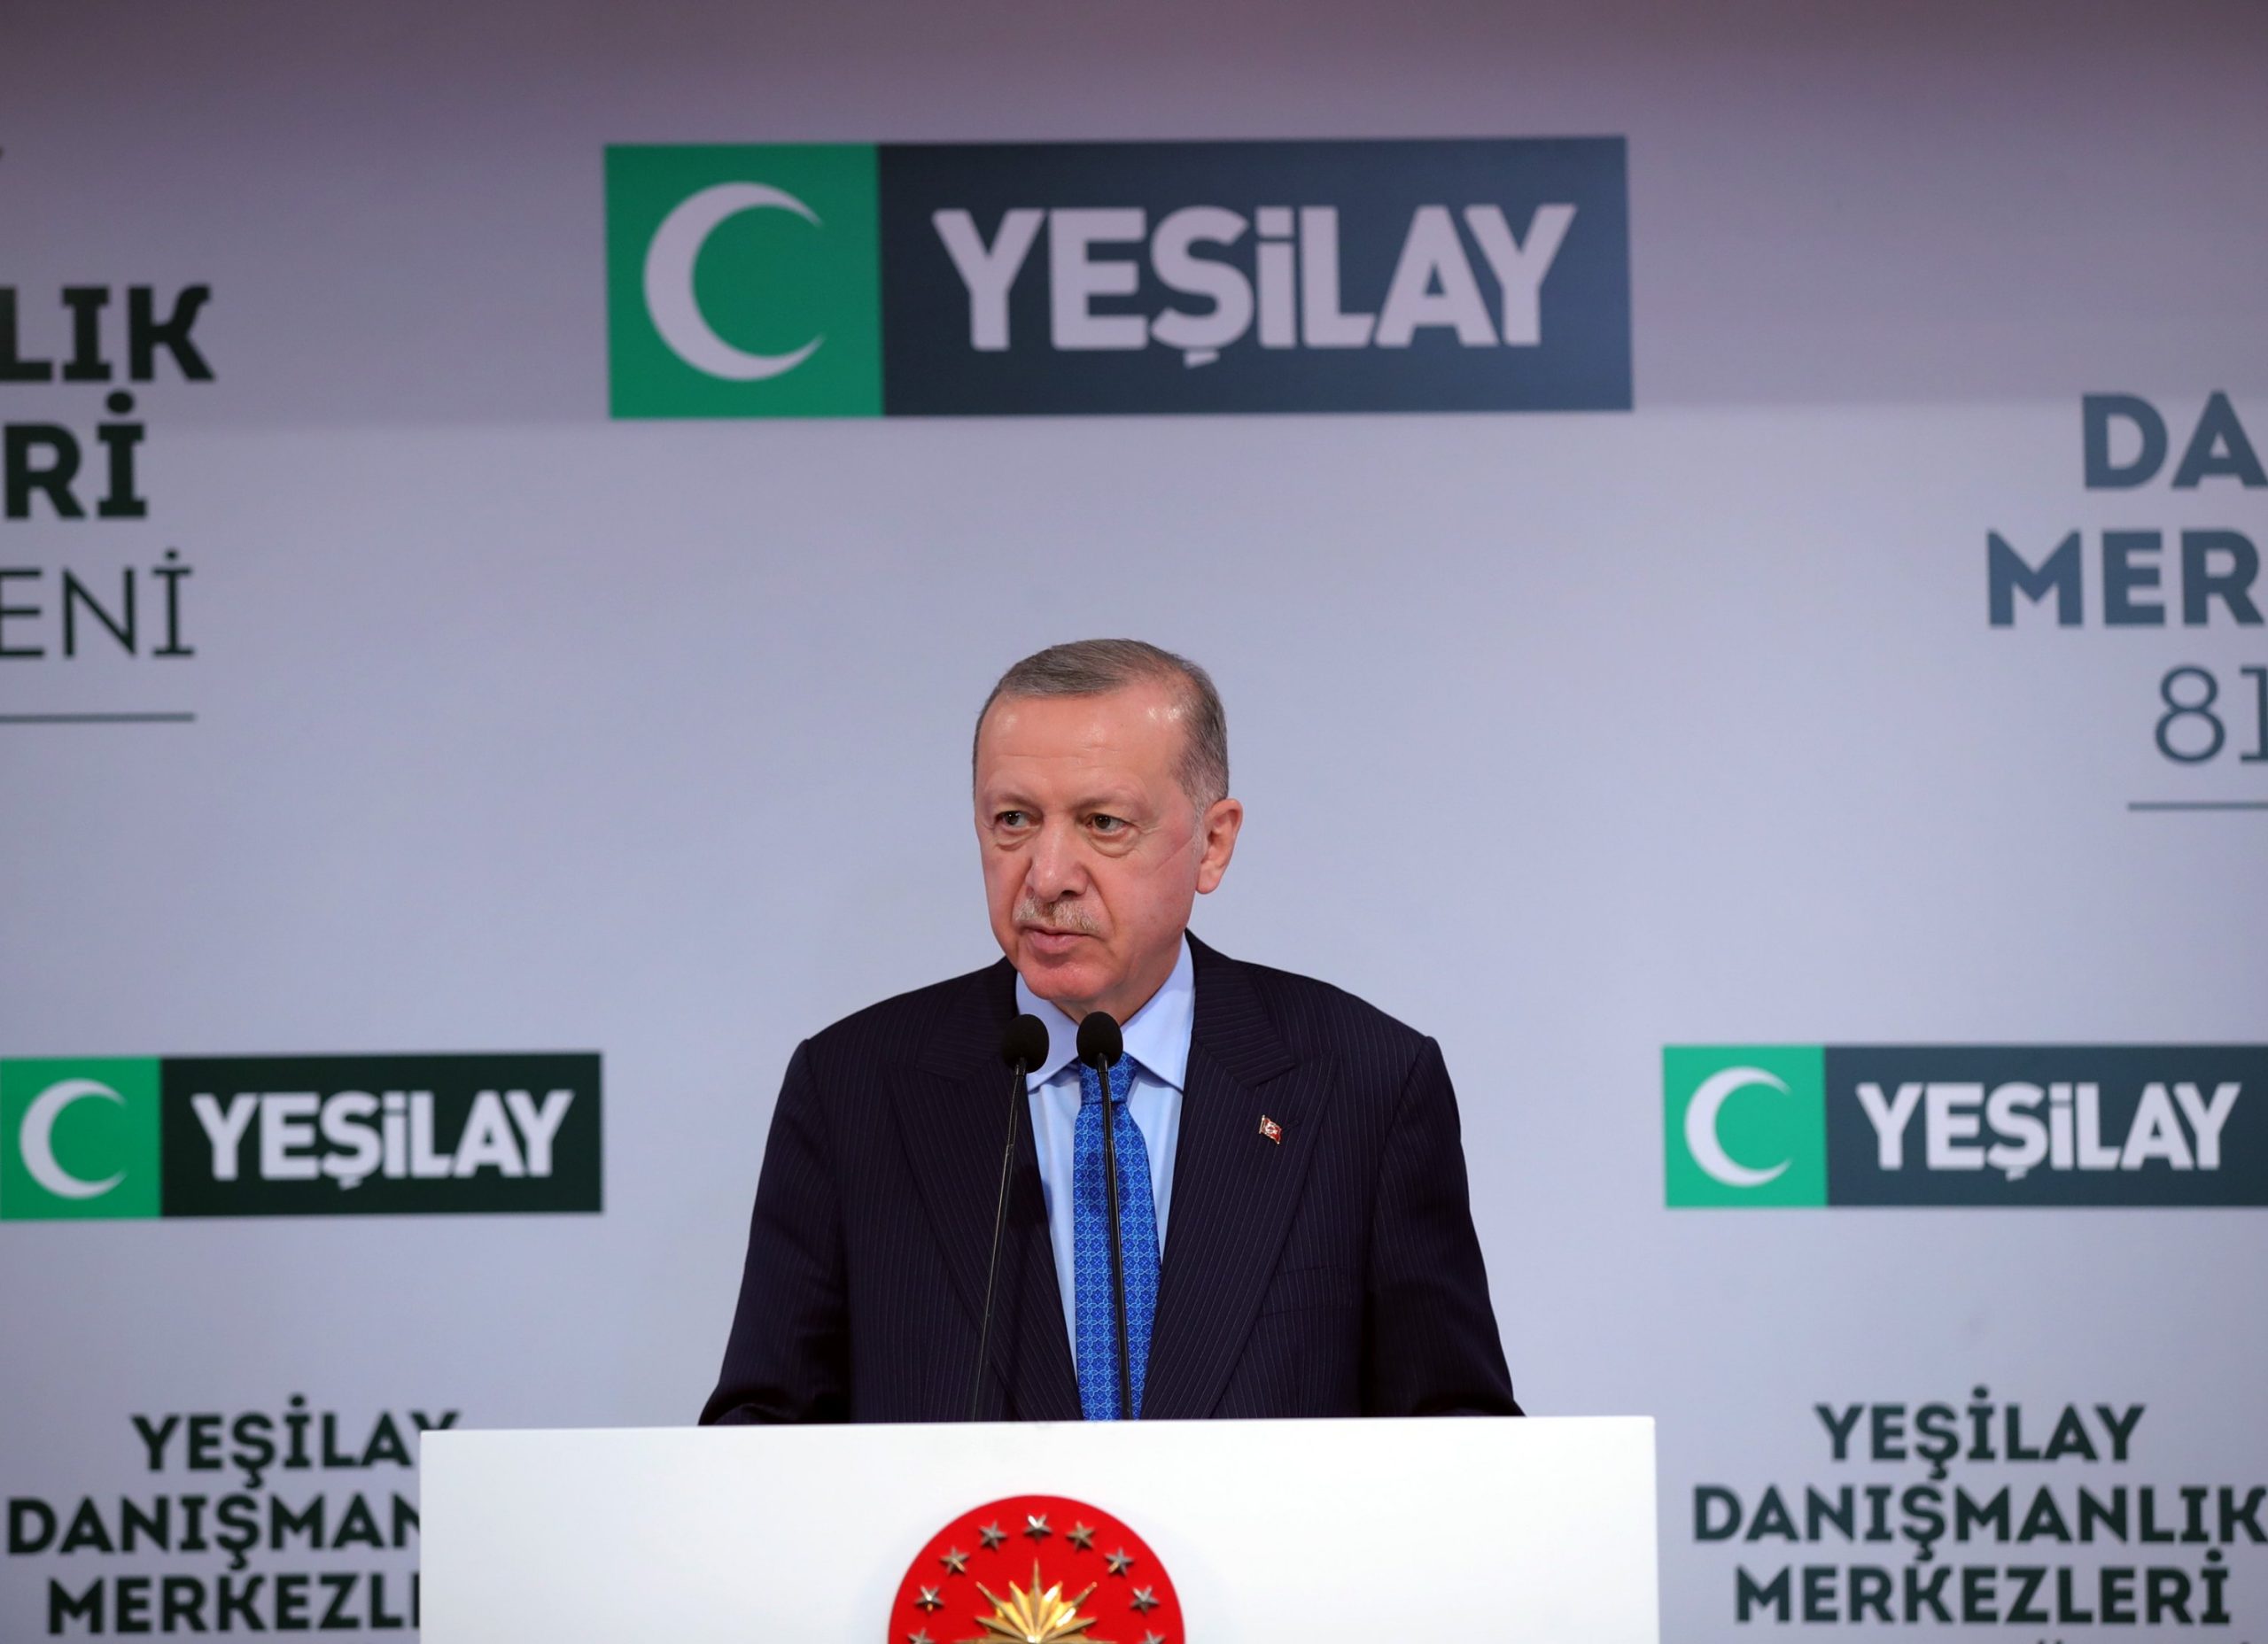 Турция борется с зависимостями с помощью подхода, ориентированного на человека – Эрдоган